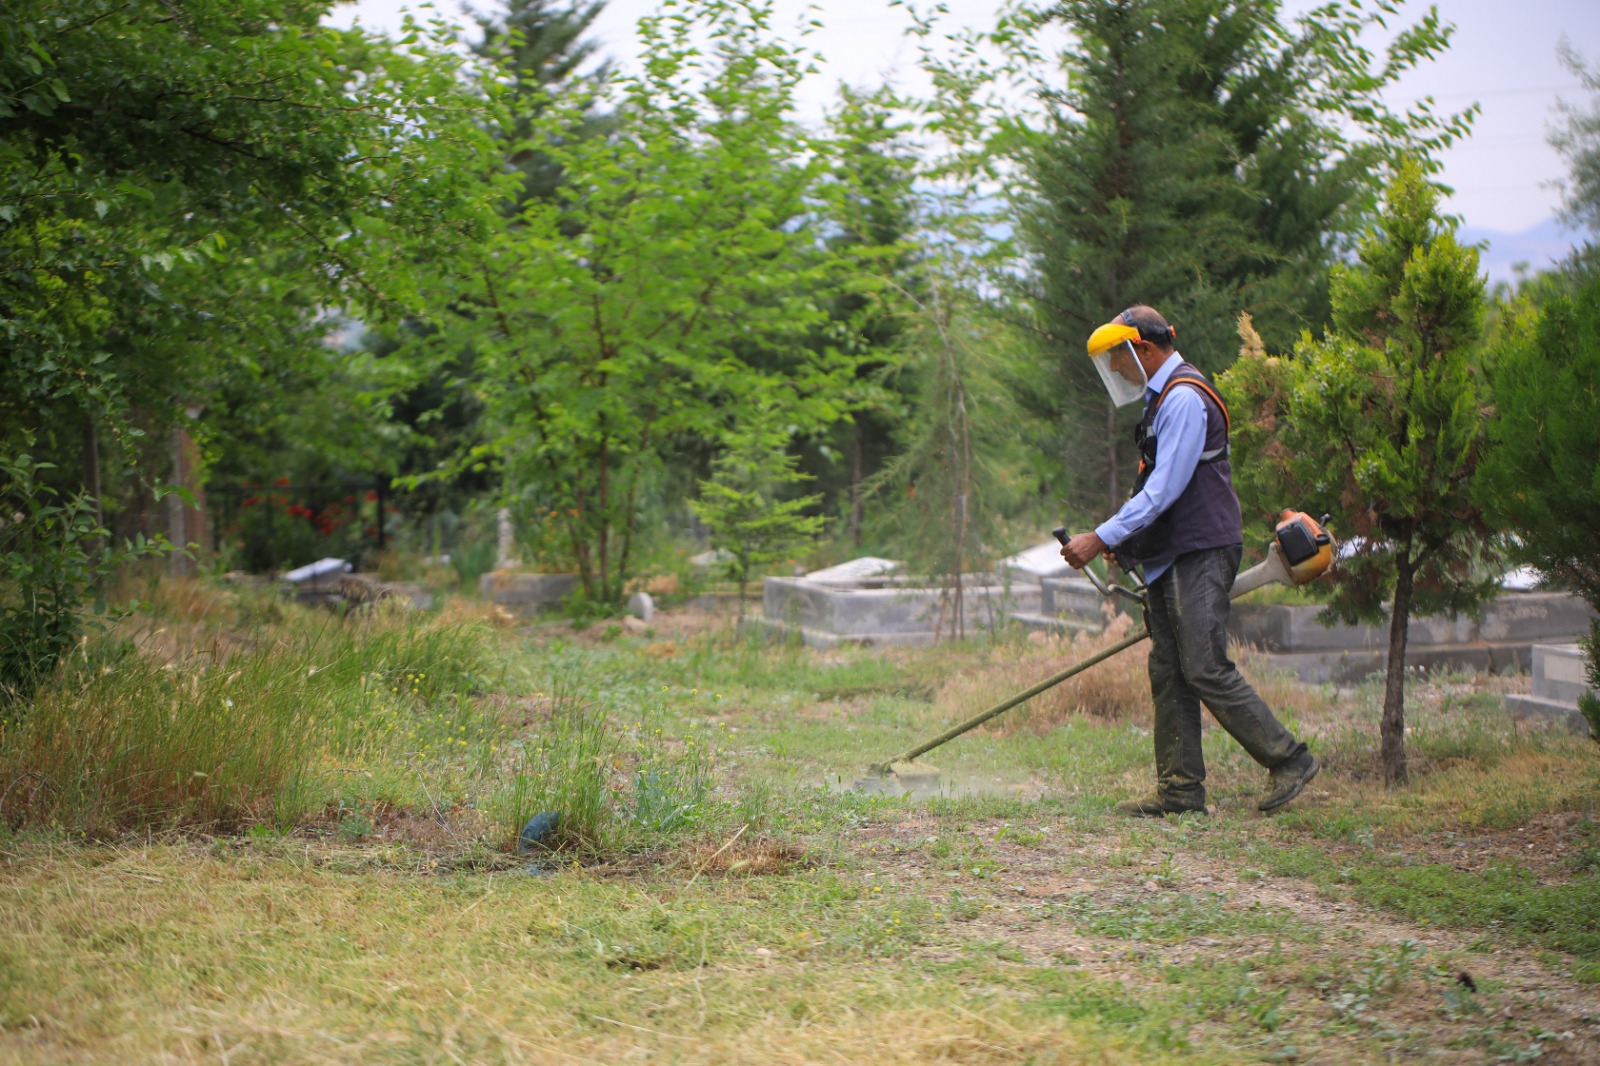 Battalgazi Belediyesi mezarlıkların bakım ve temizliğini sürdürüyor